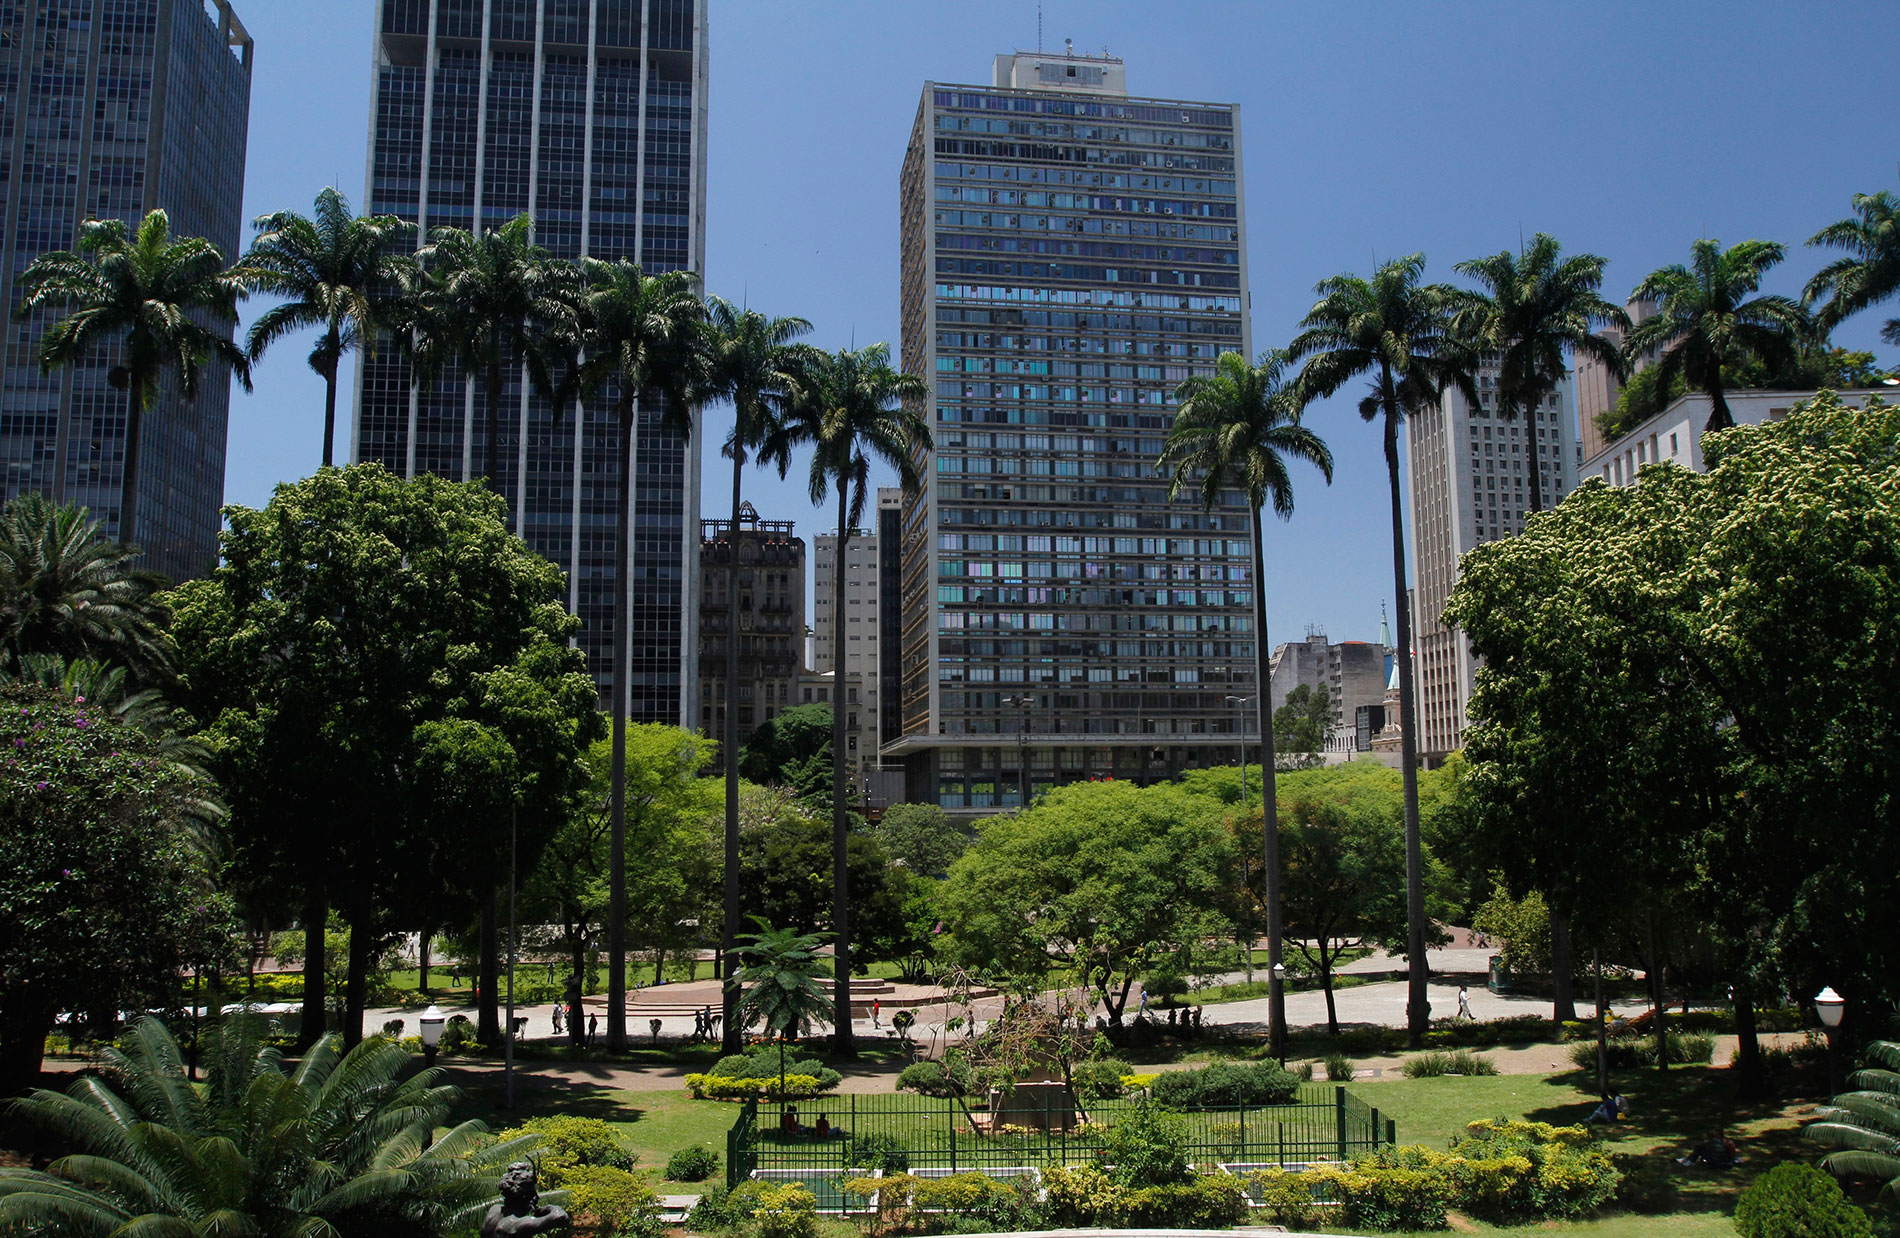 258328 520873 anhangabau 141113 foto josecordeiro 018  2  - 15 lugares para visitar que revelam a história de São Paulo